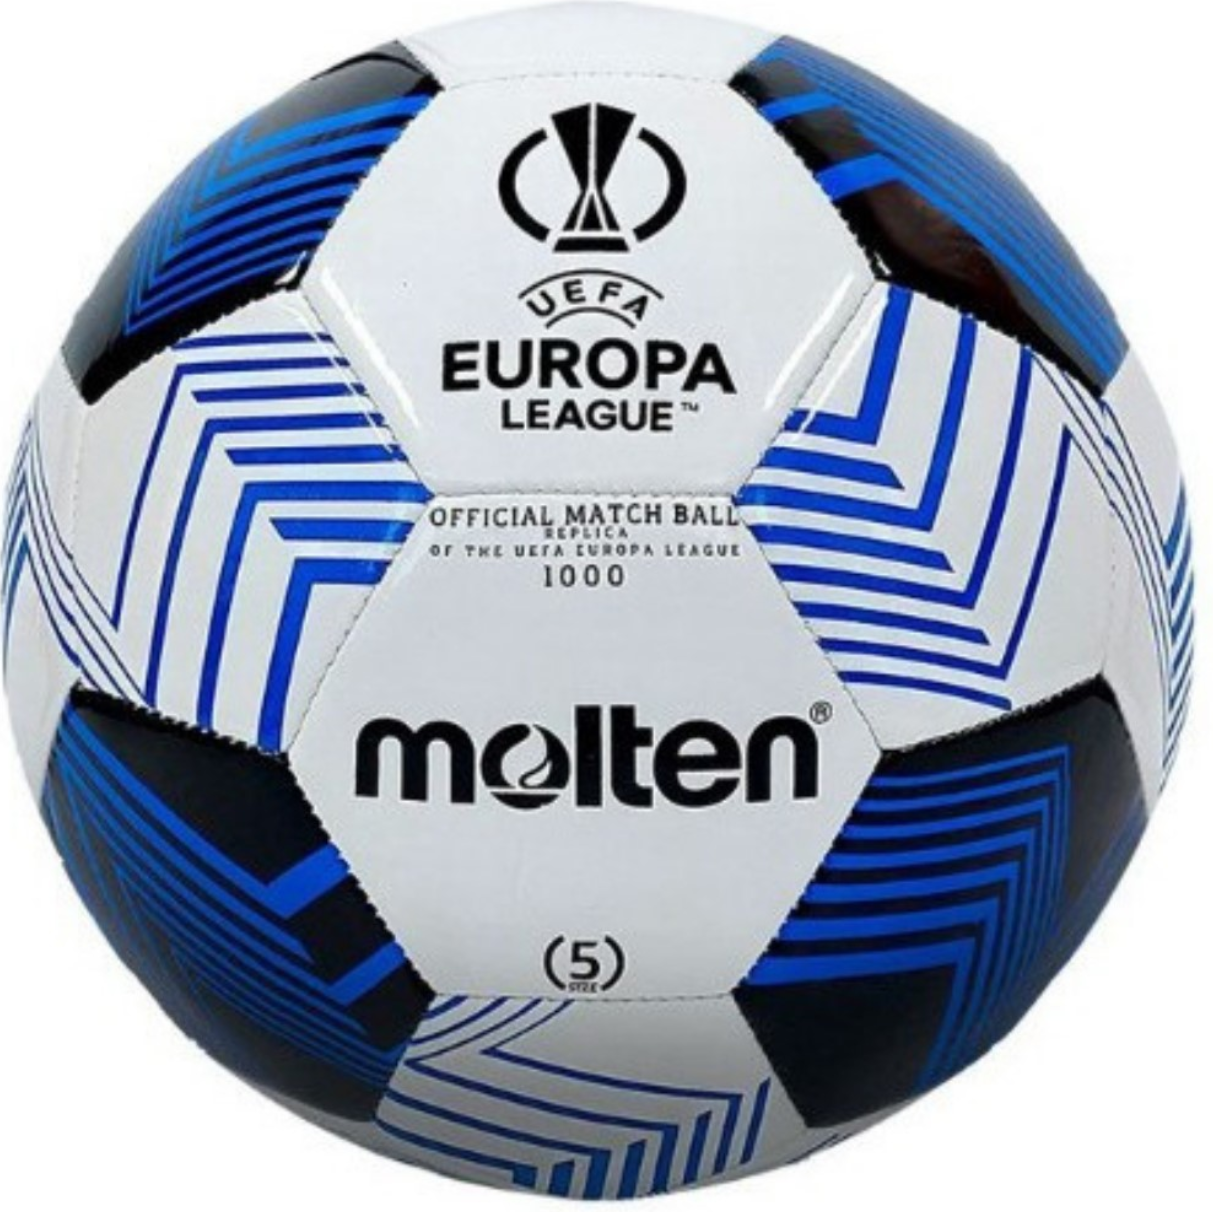 Molten 5 Numara UEFA Avrupa Ligi Tasarımı Futbol Topu  F5U1000-34B